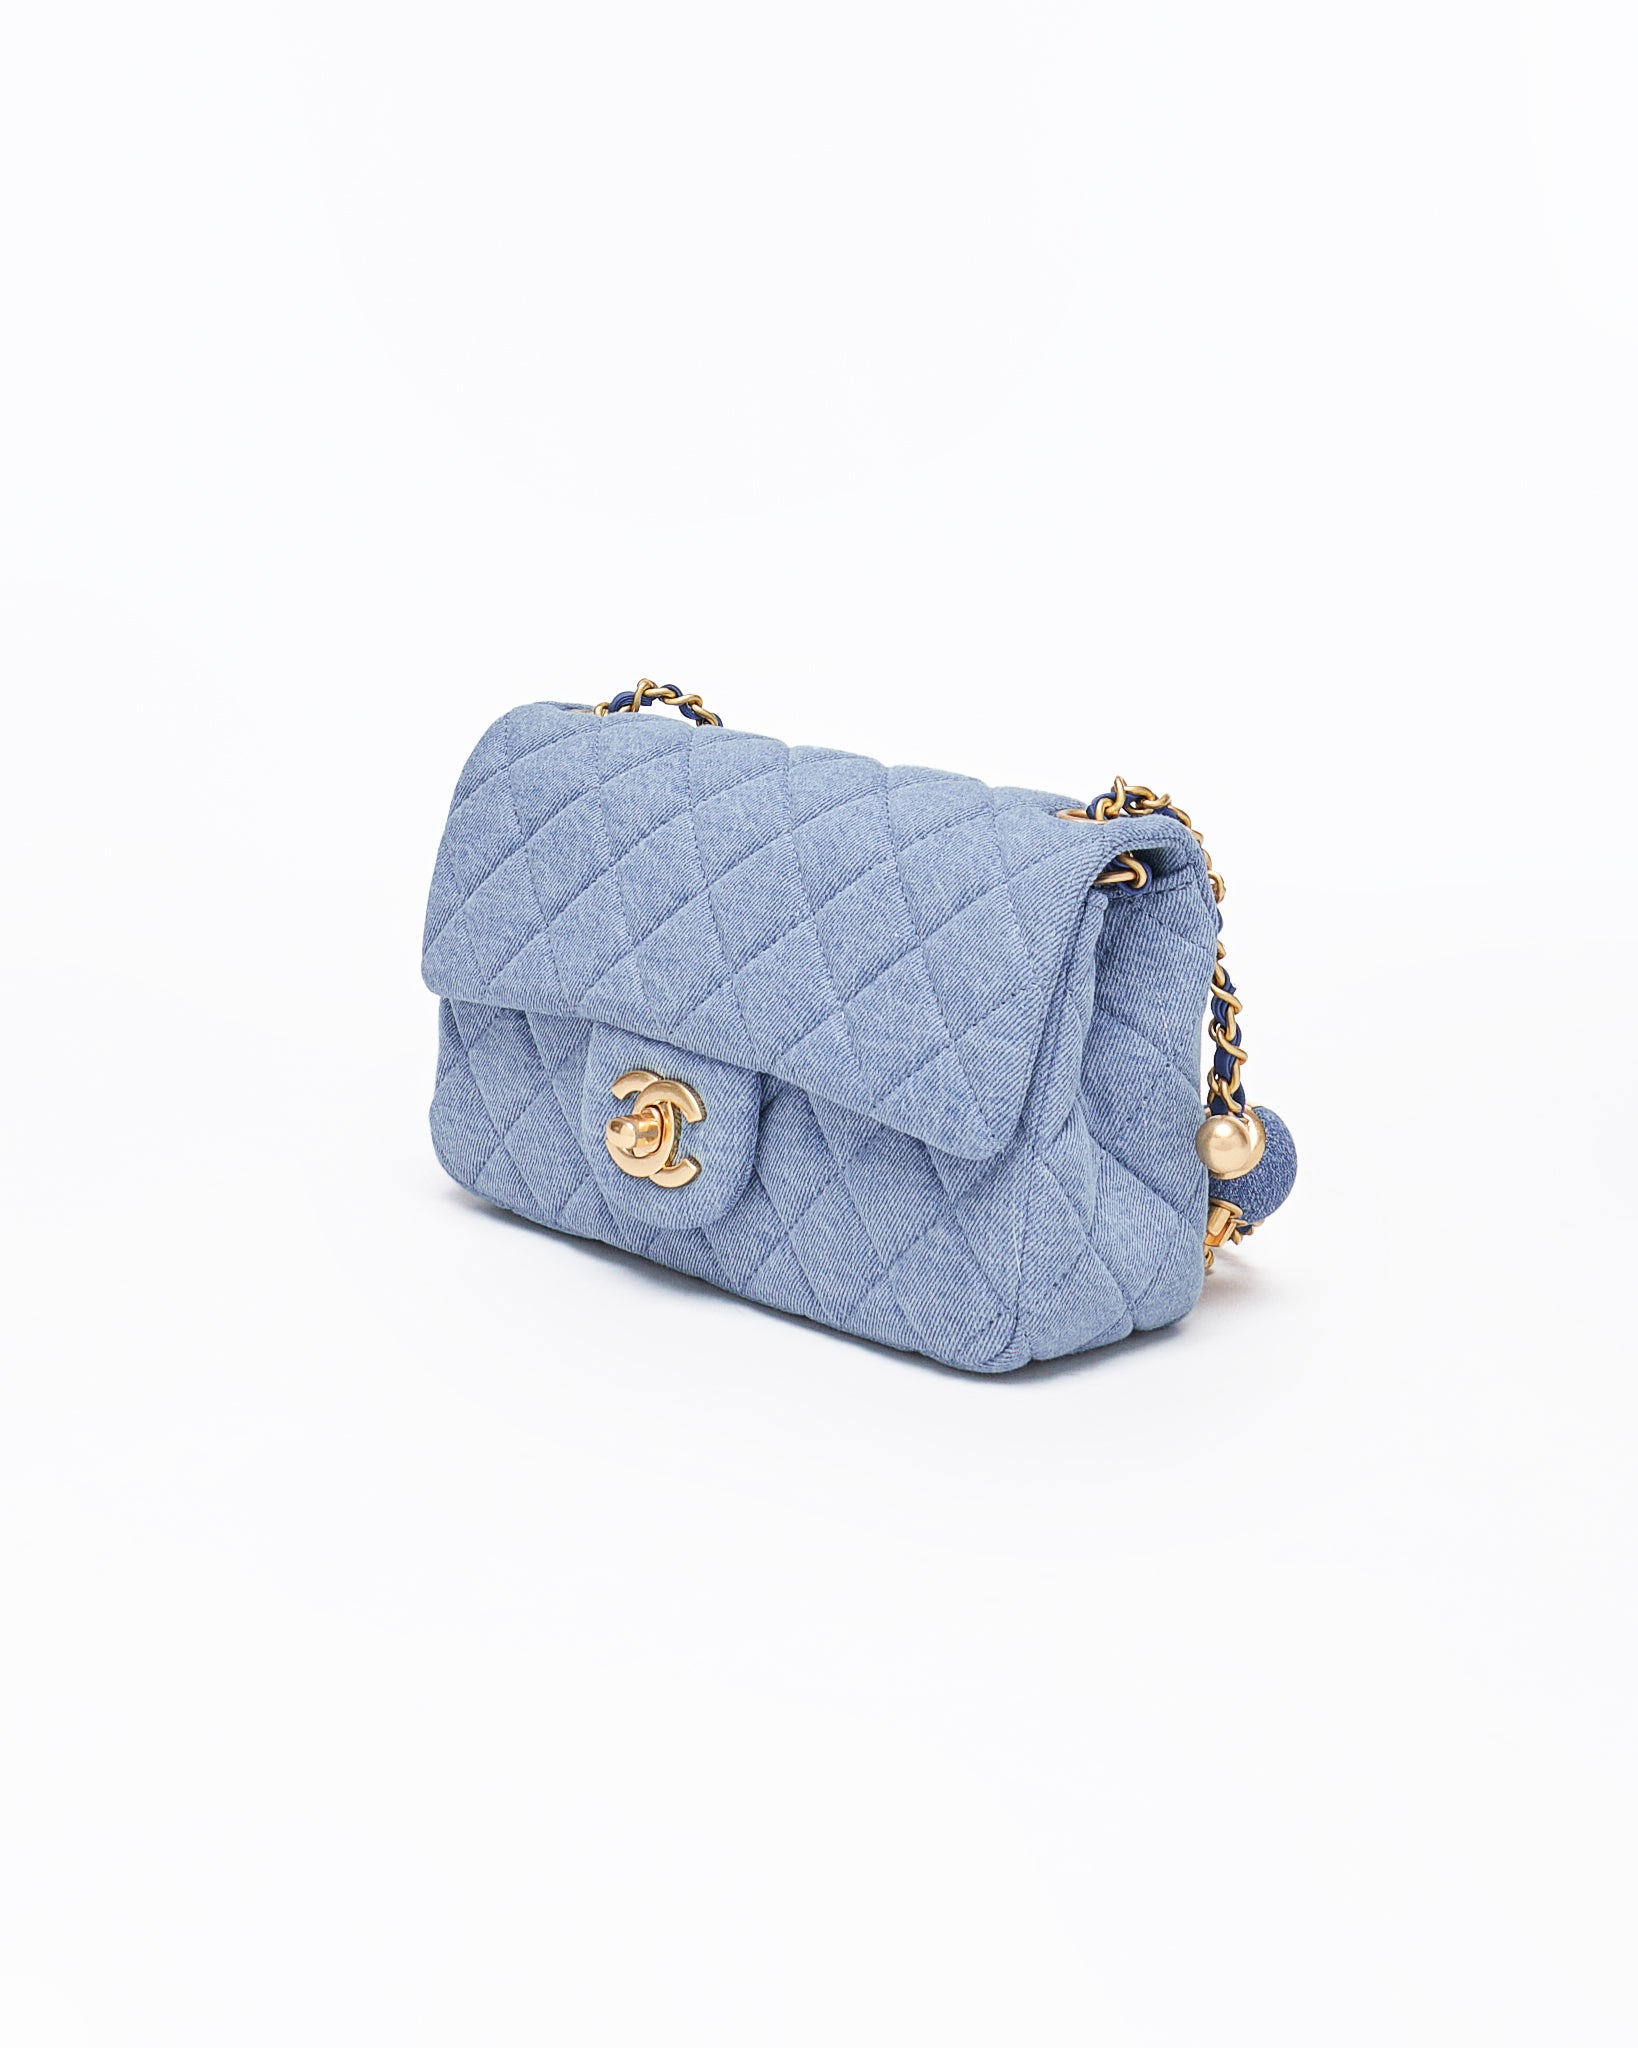 CHA Small Classic Flap Lady Blue Bag 229